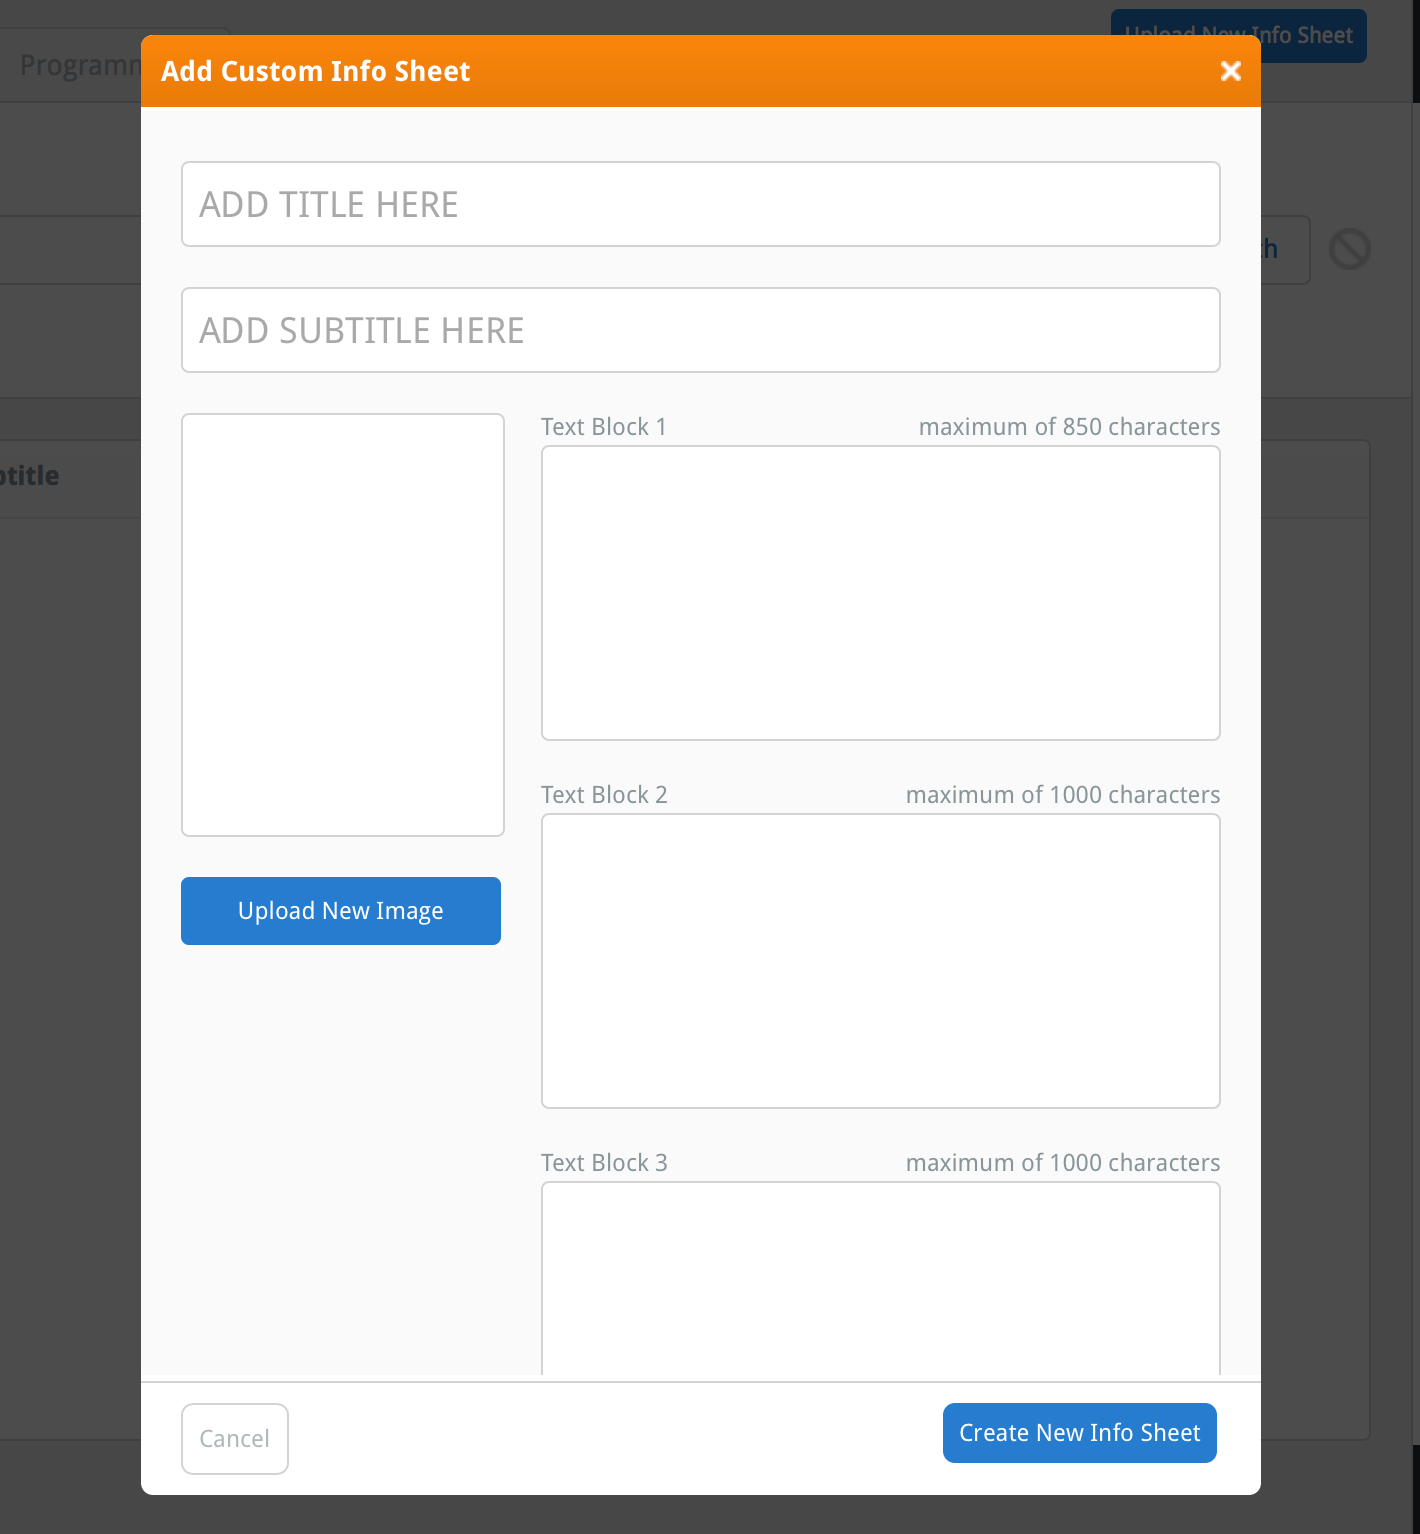 The Add Custom Info Sheet window